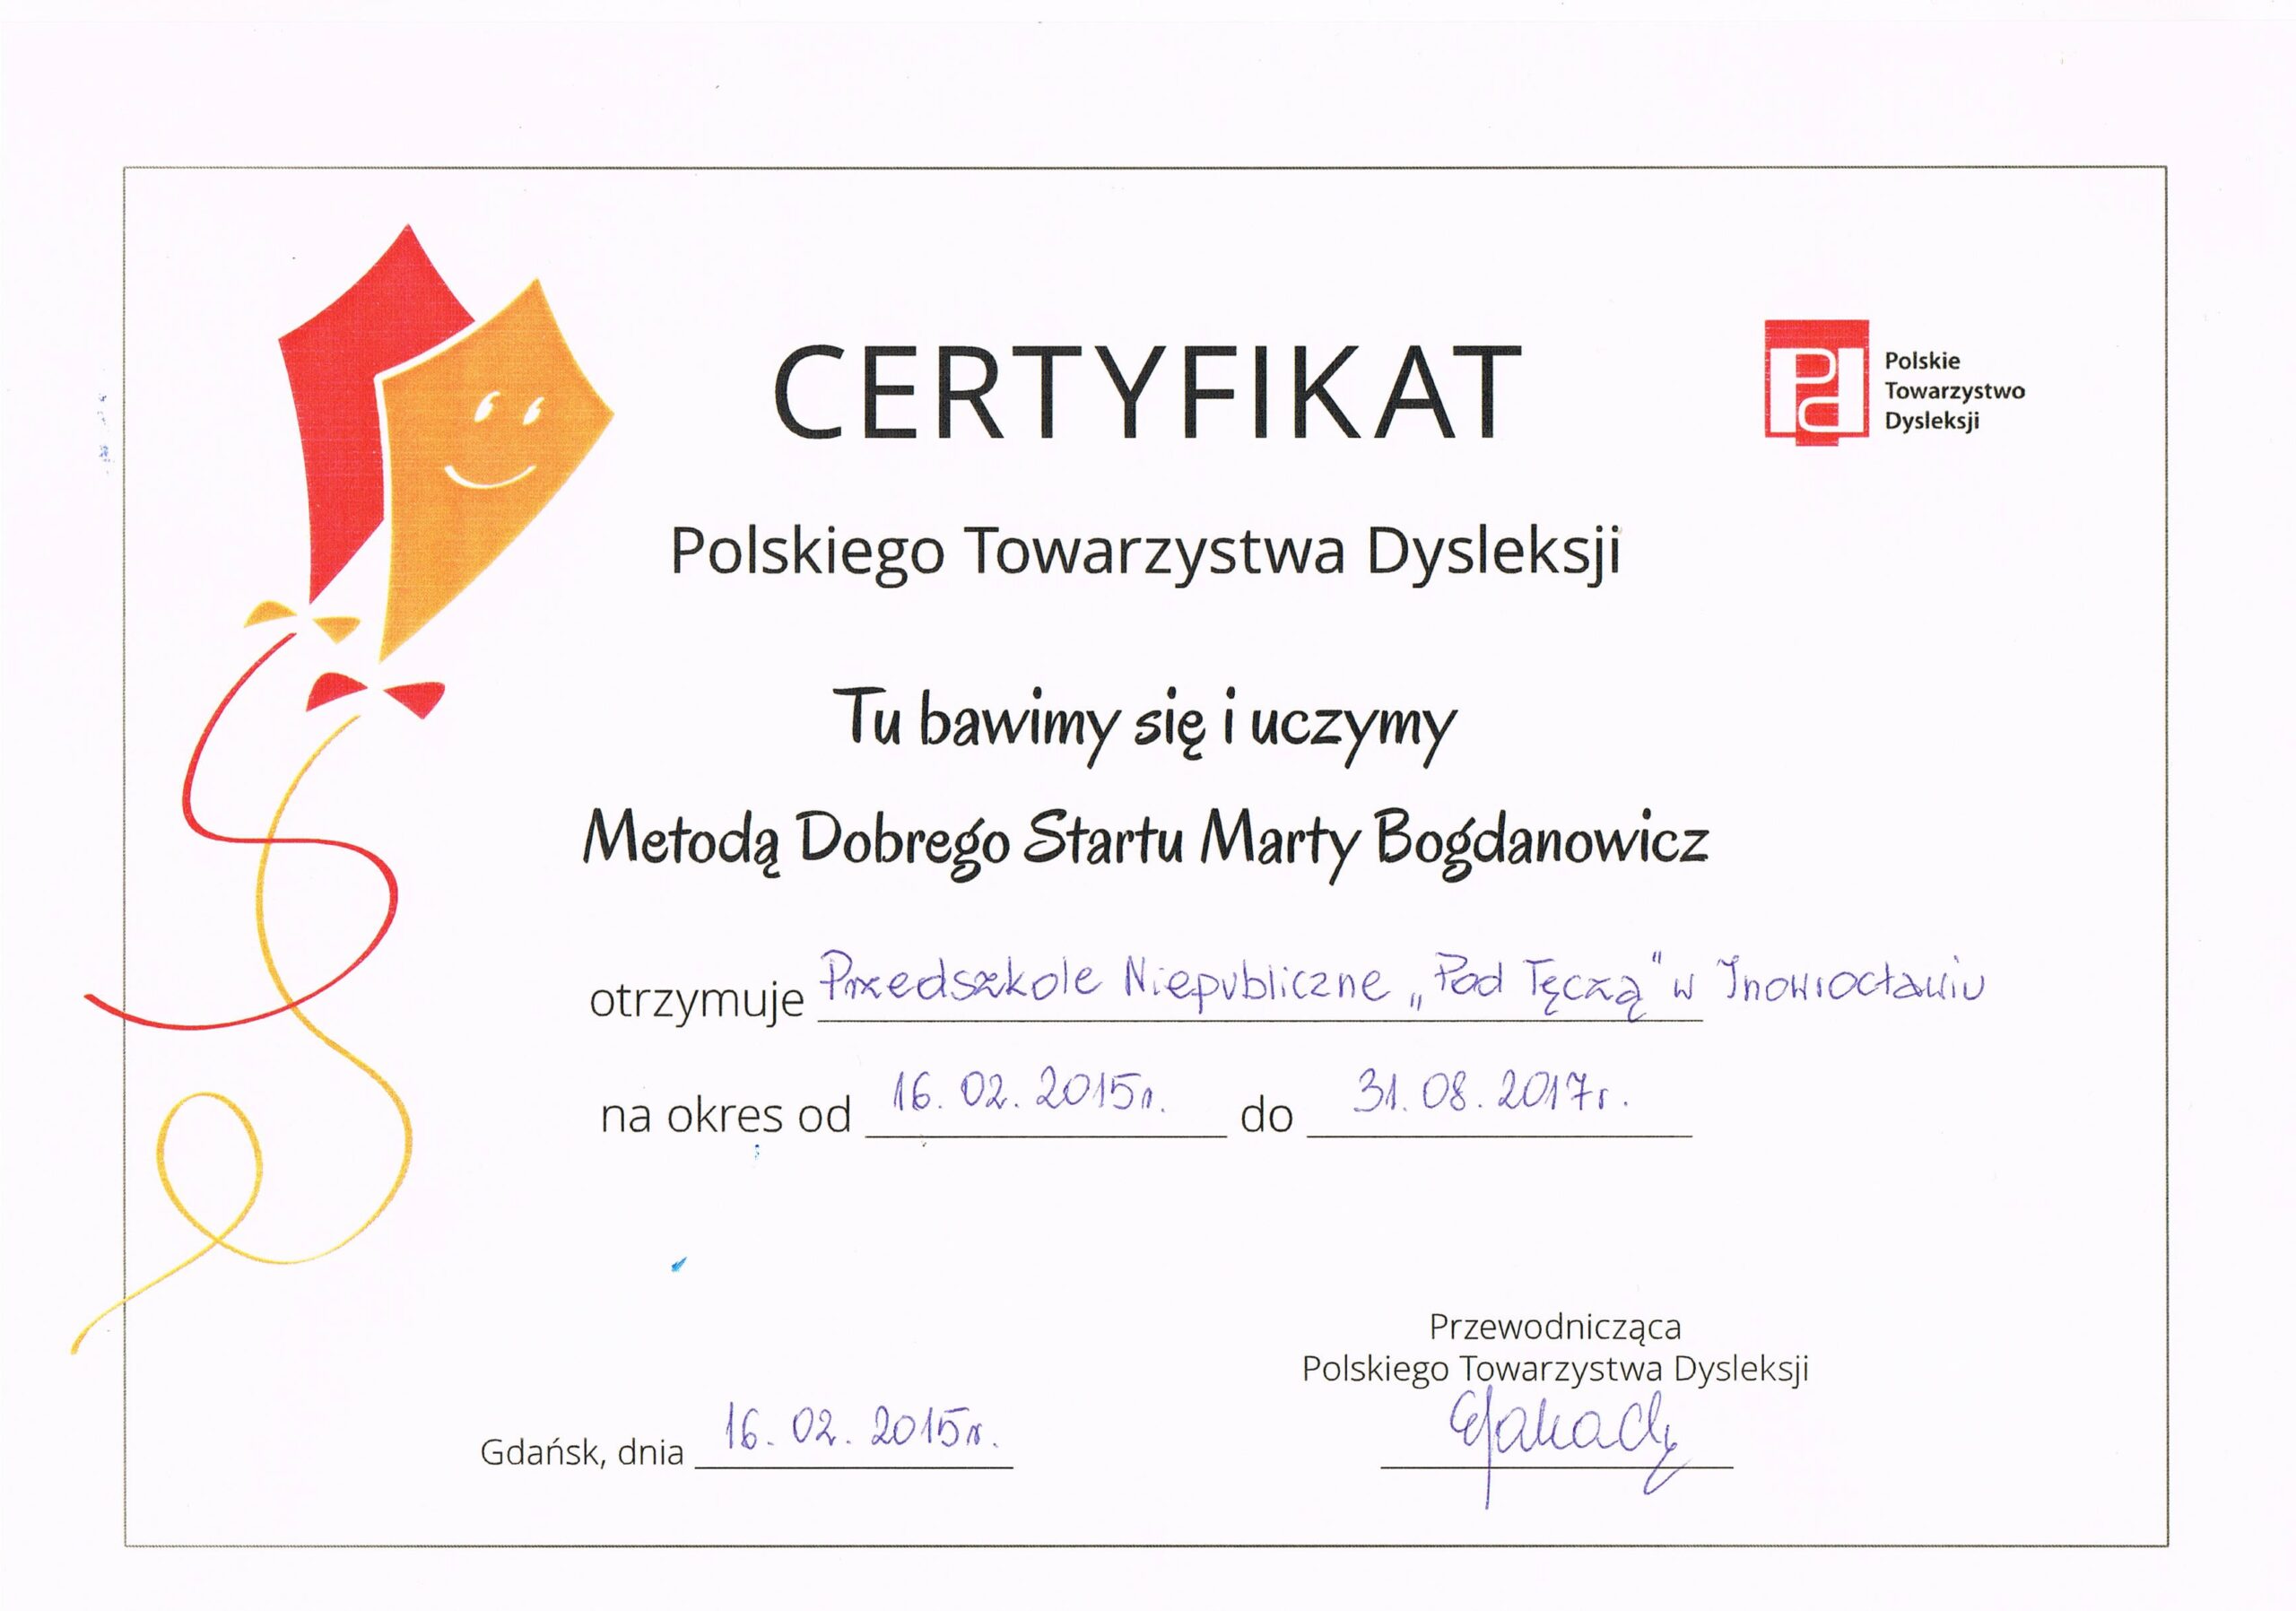 Certyfikat Polskiego Towarzystwa Dysleksji 2015 - skan